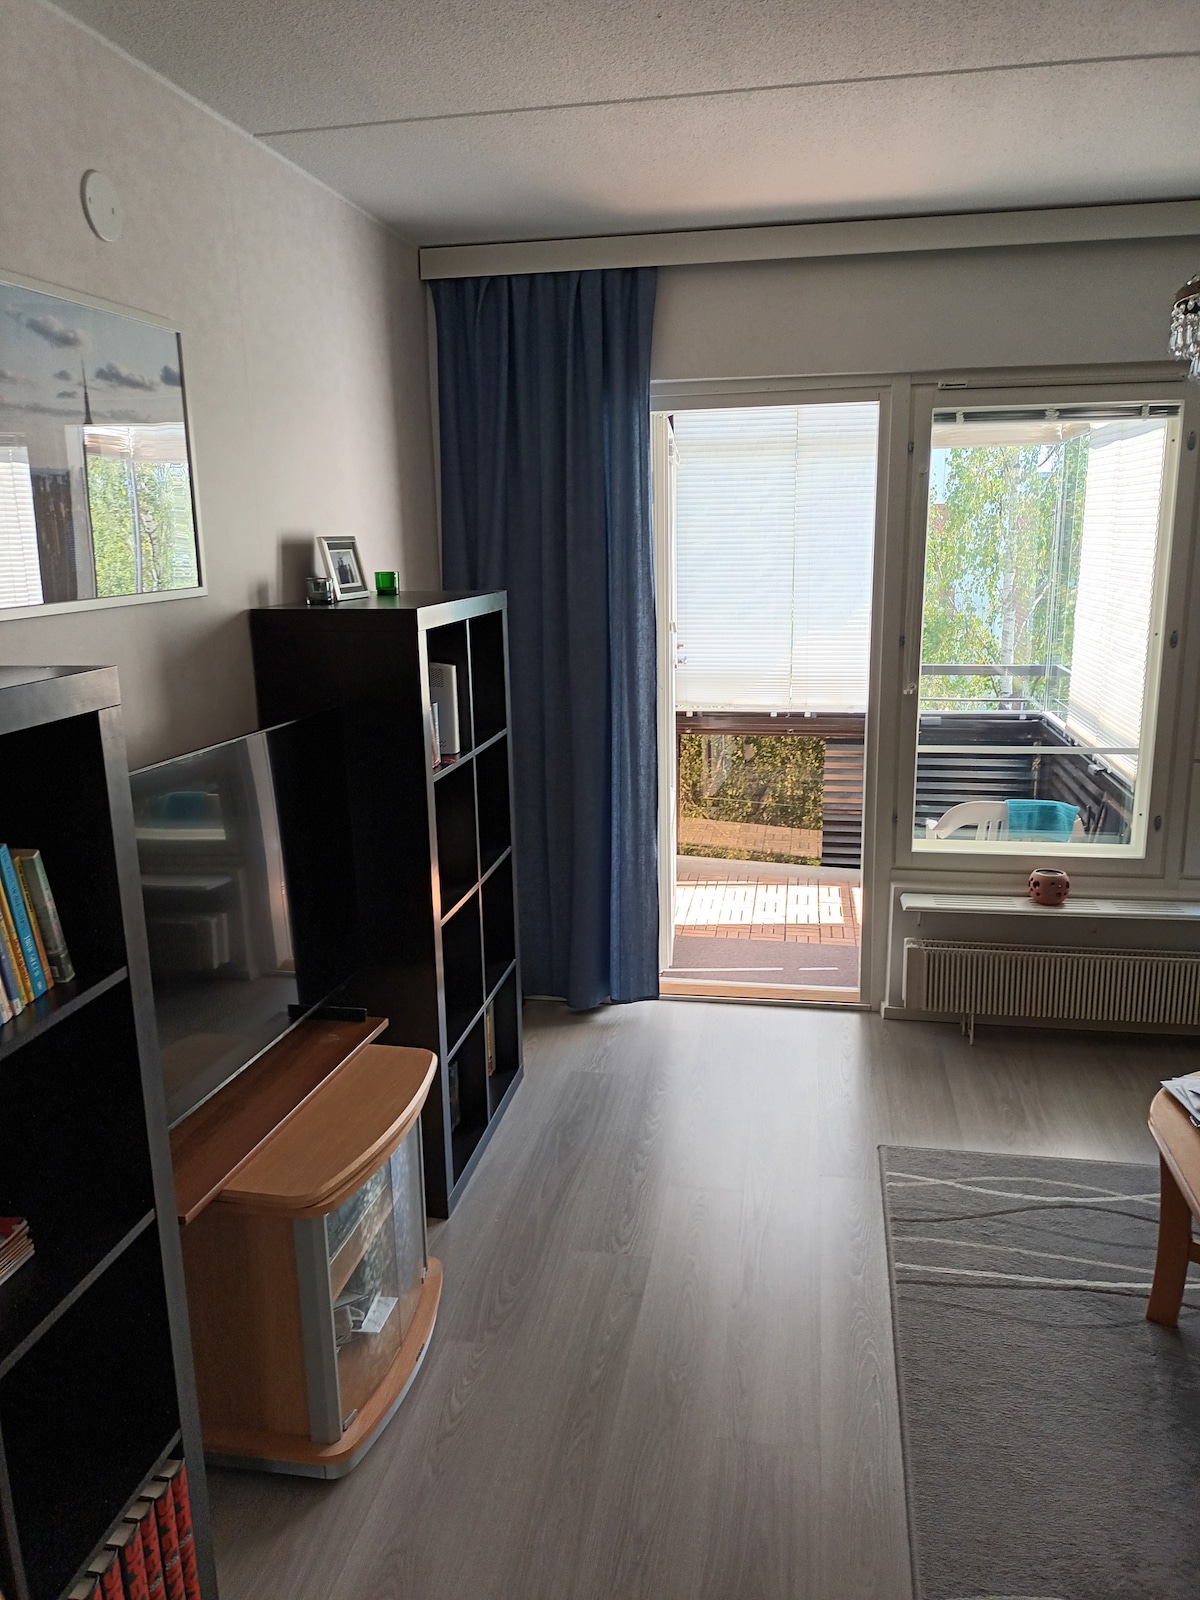 2 bedroom, living room, kitchen, bathroom, balcony